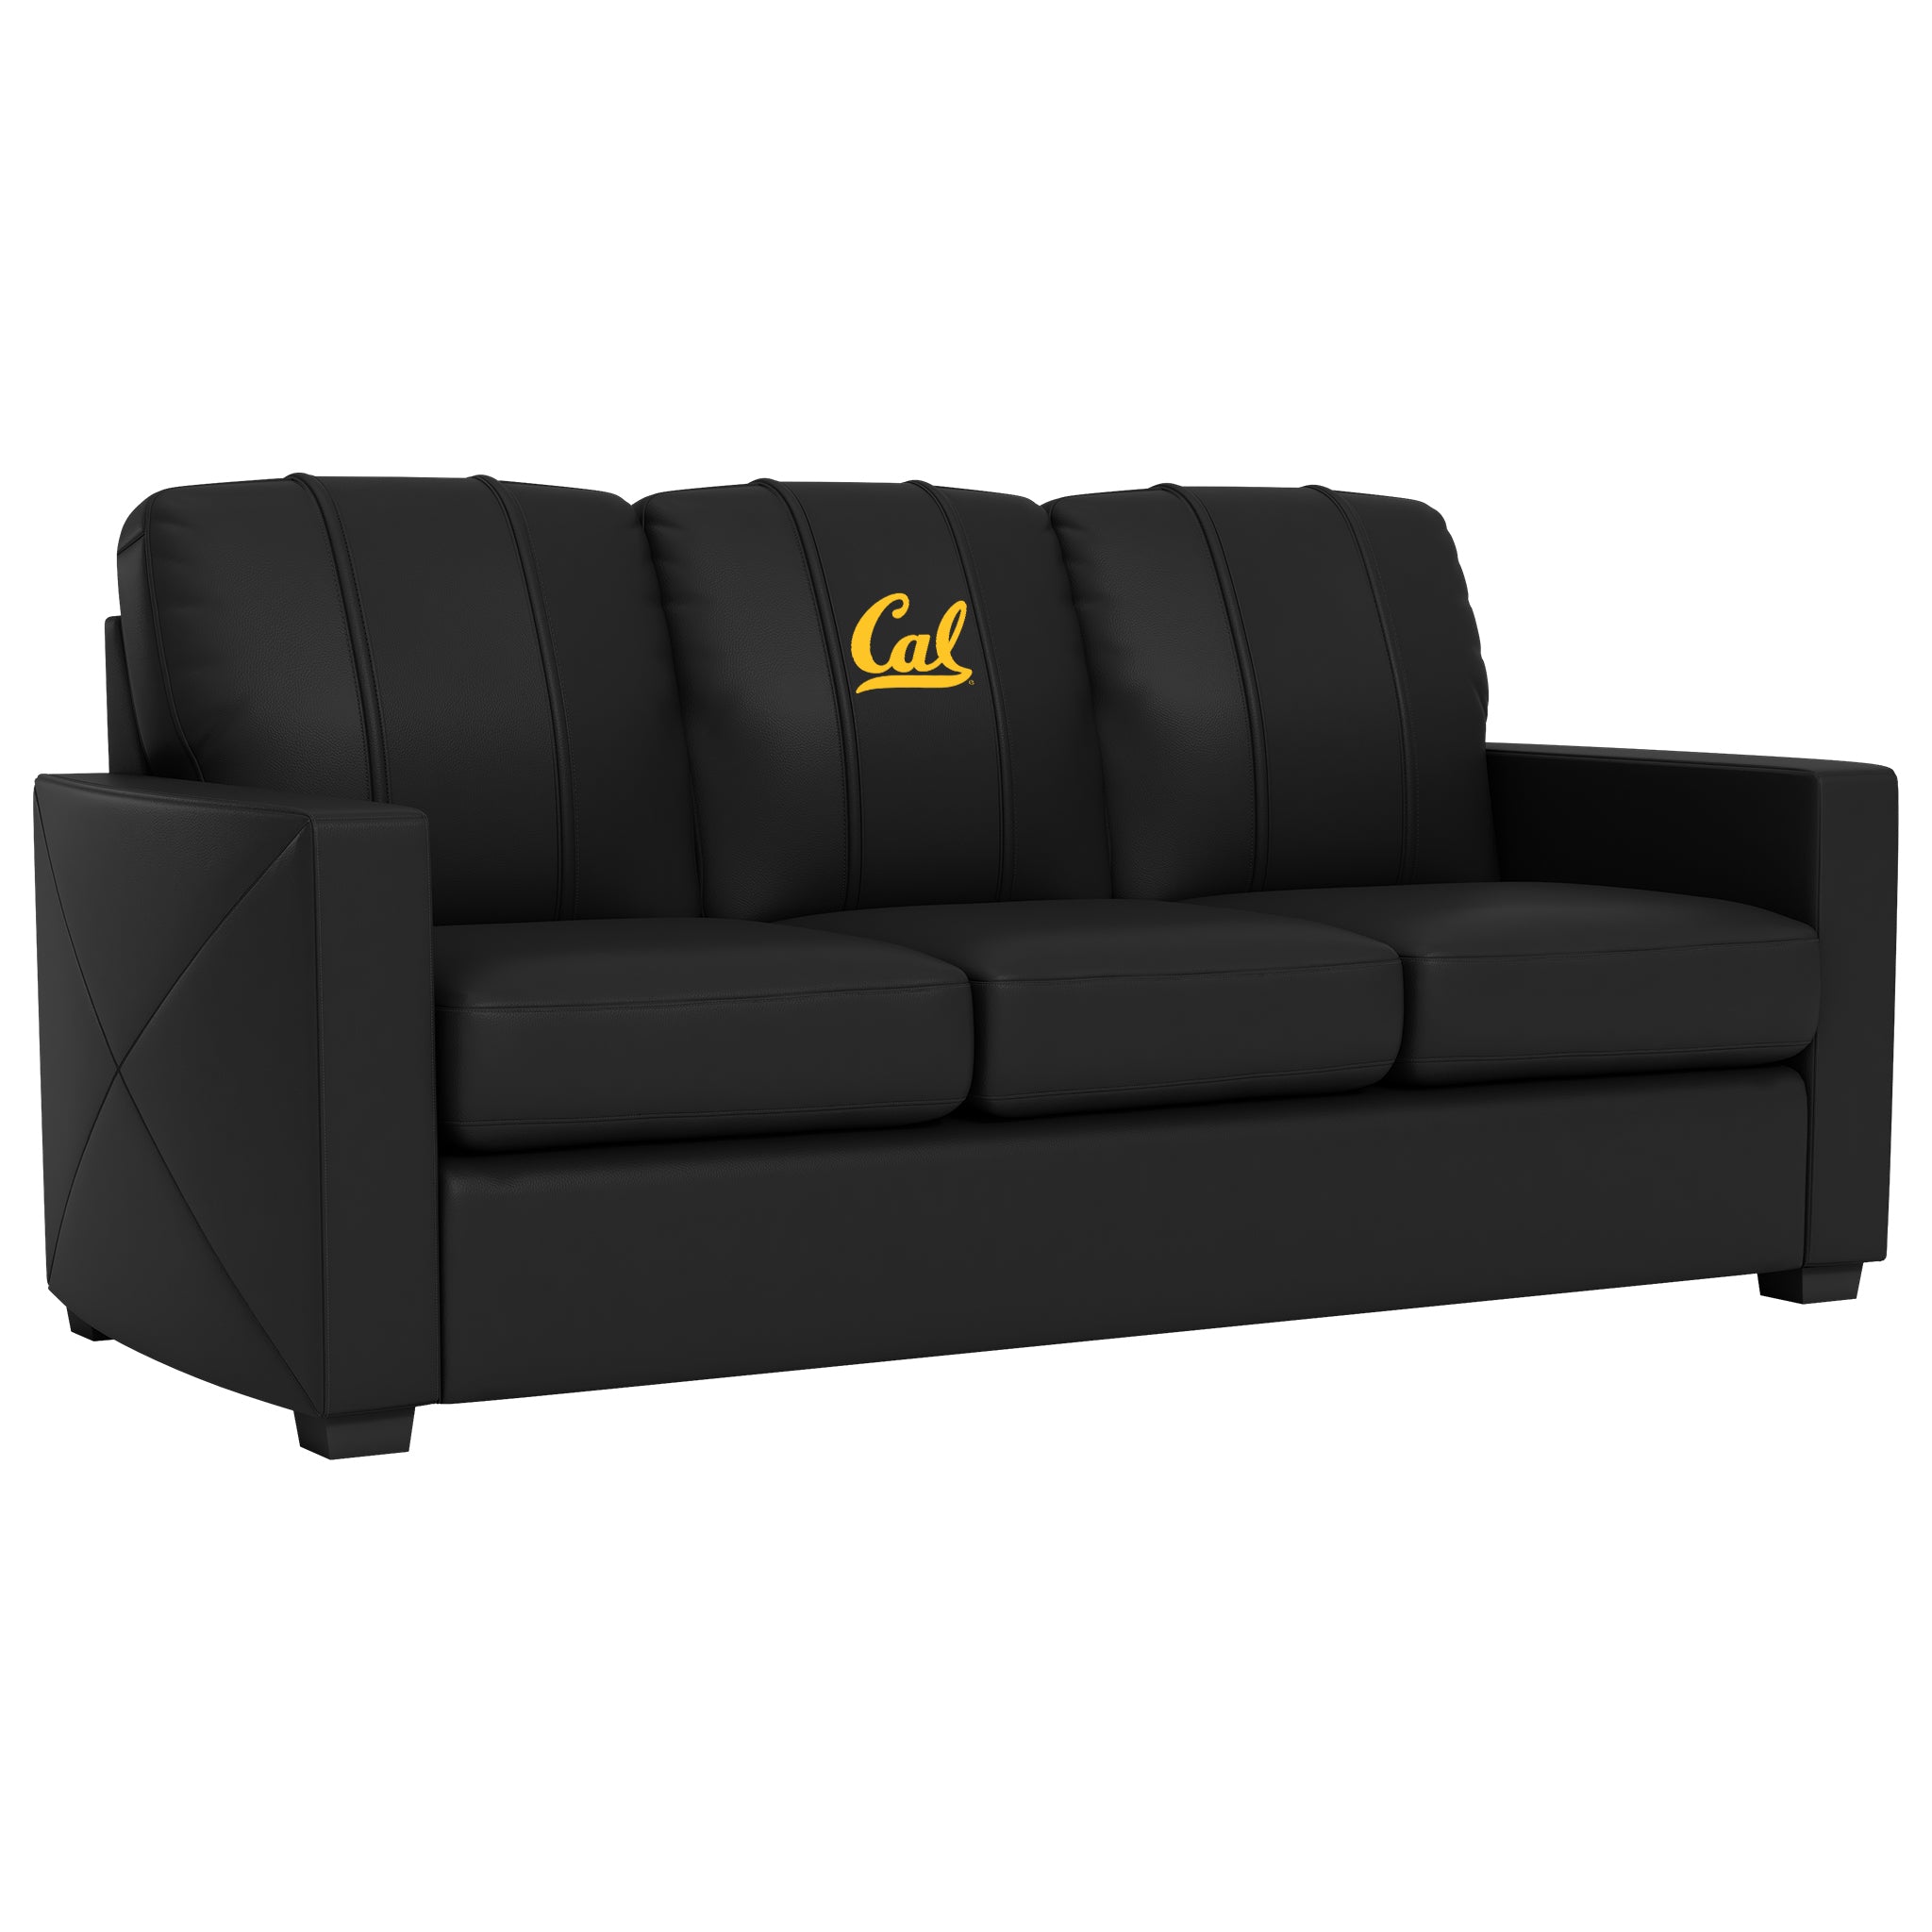 California Golden Bears Silver Sofa with California Golden Bears Logo